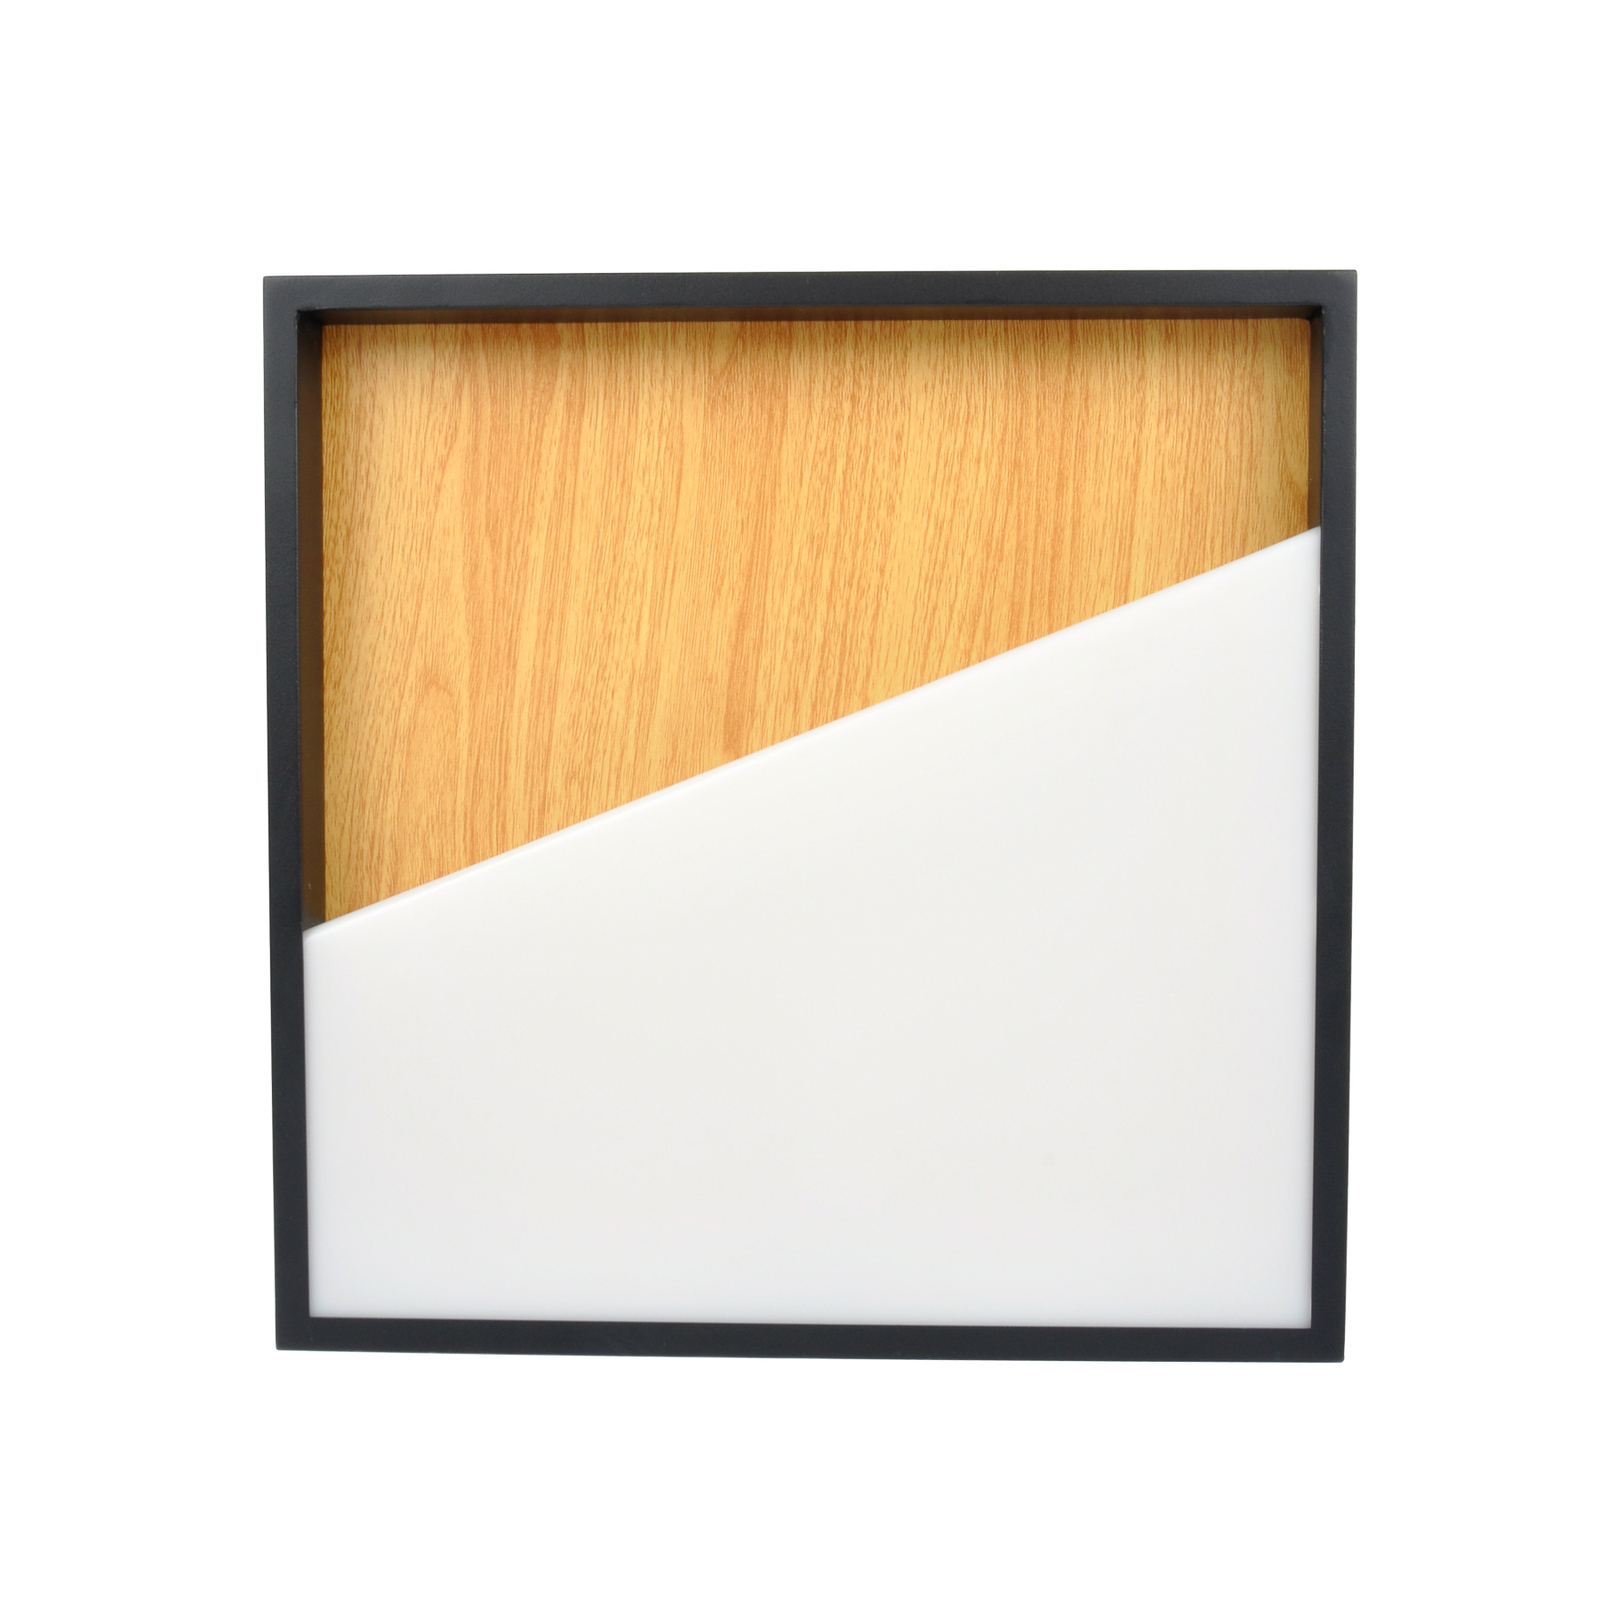 Φωτιστικό τοίχου Vista LED, ανοιχτό ξύλο/μαύρο, 30 x 30 cm